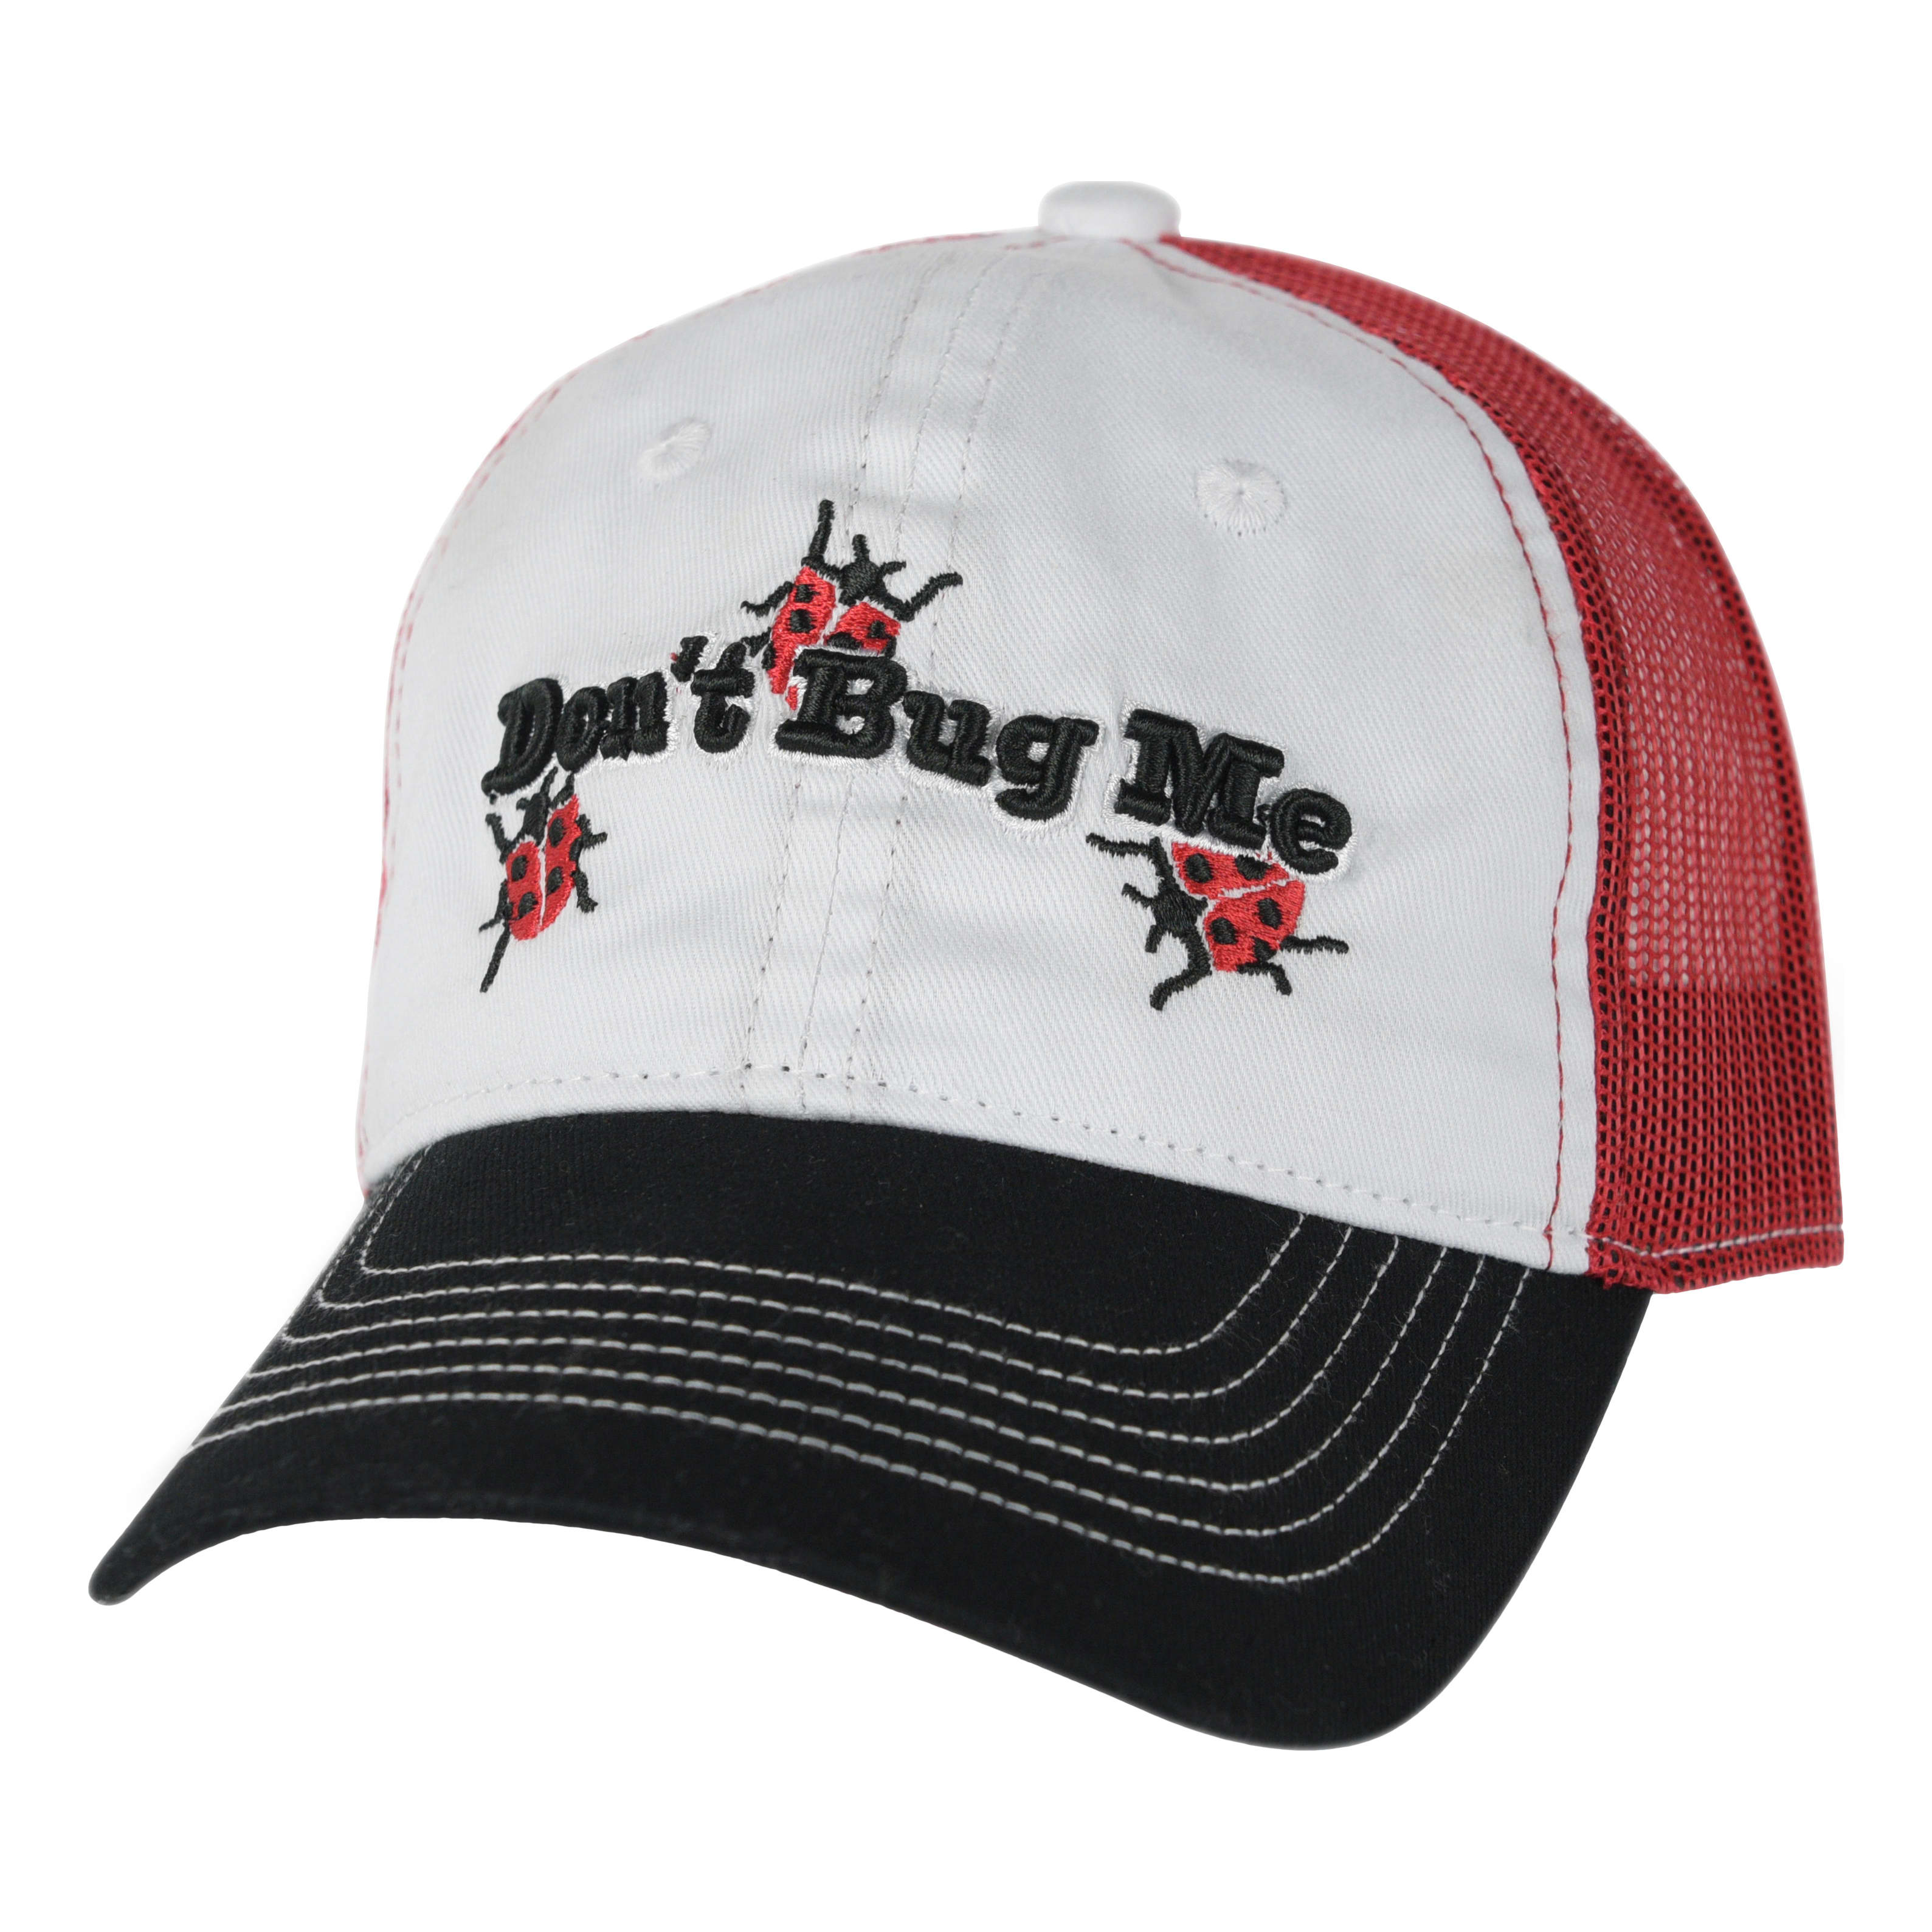 Bass Pro Shops® Embroidered Logo Mesh Trucker Cap